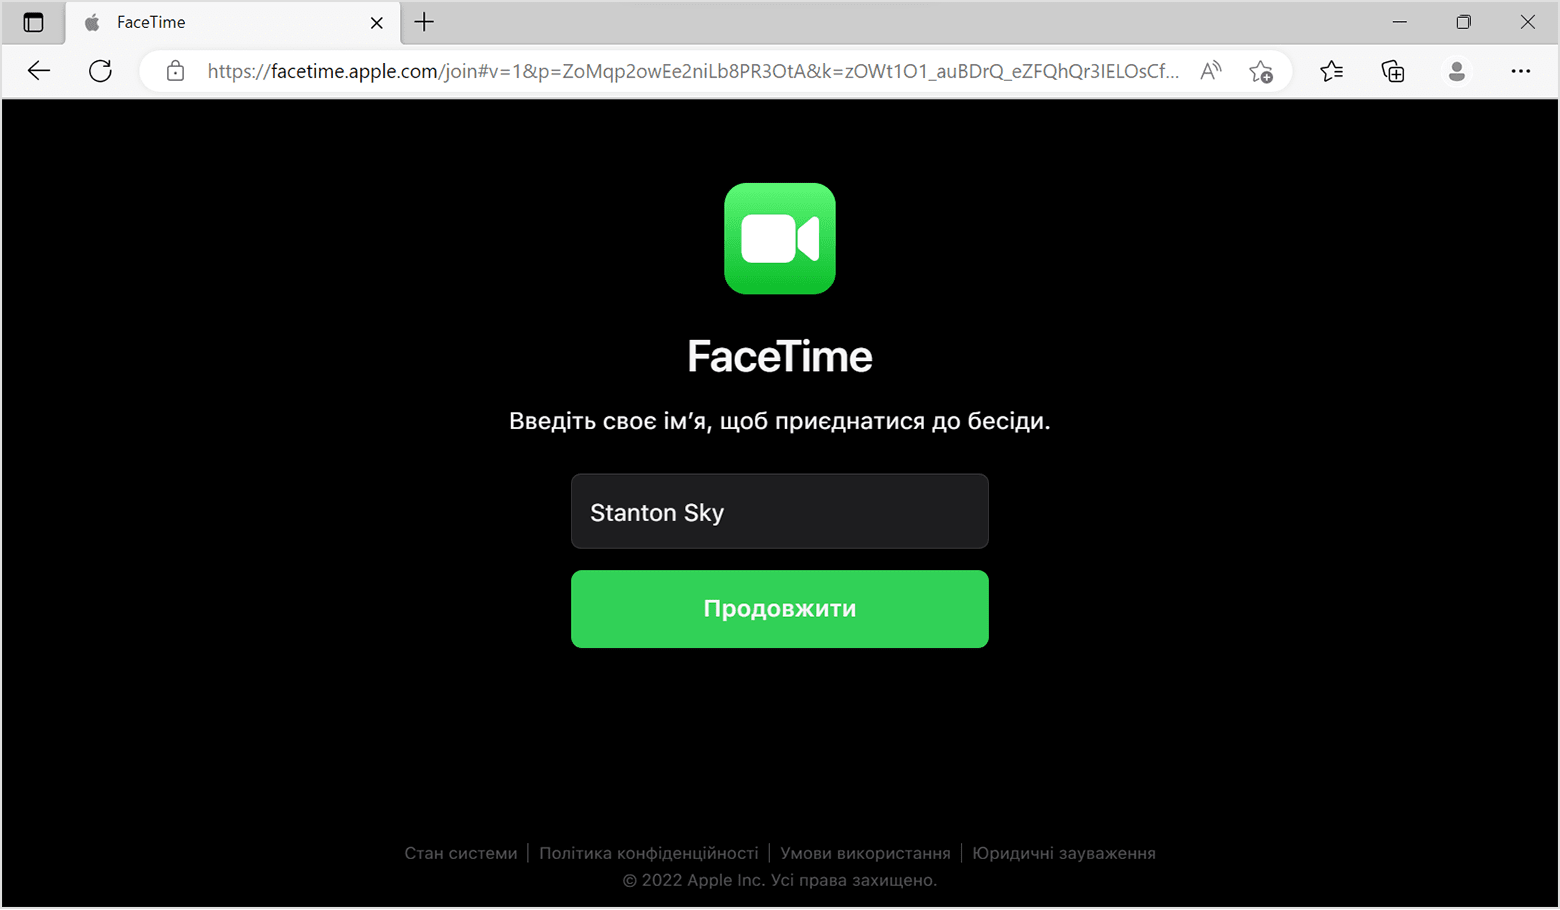 Вікно FaceTime у браузері: введіть ваше ім'я